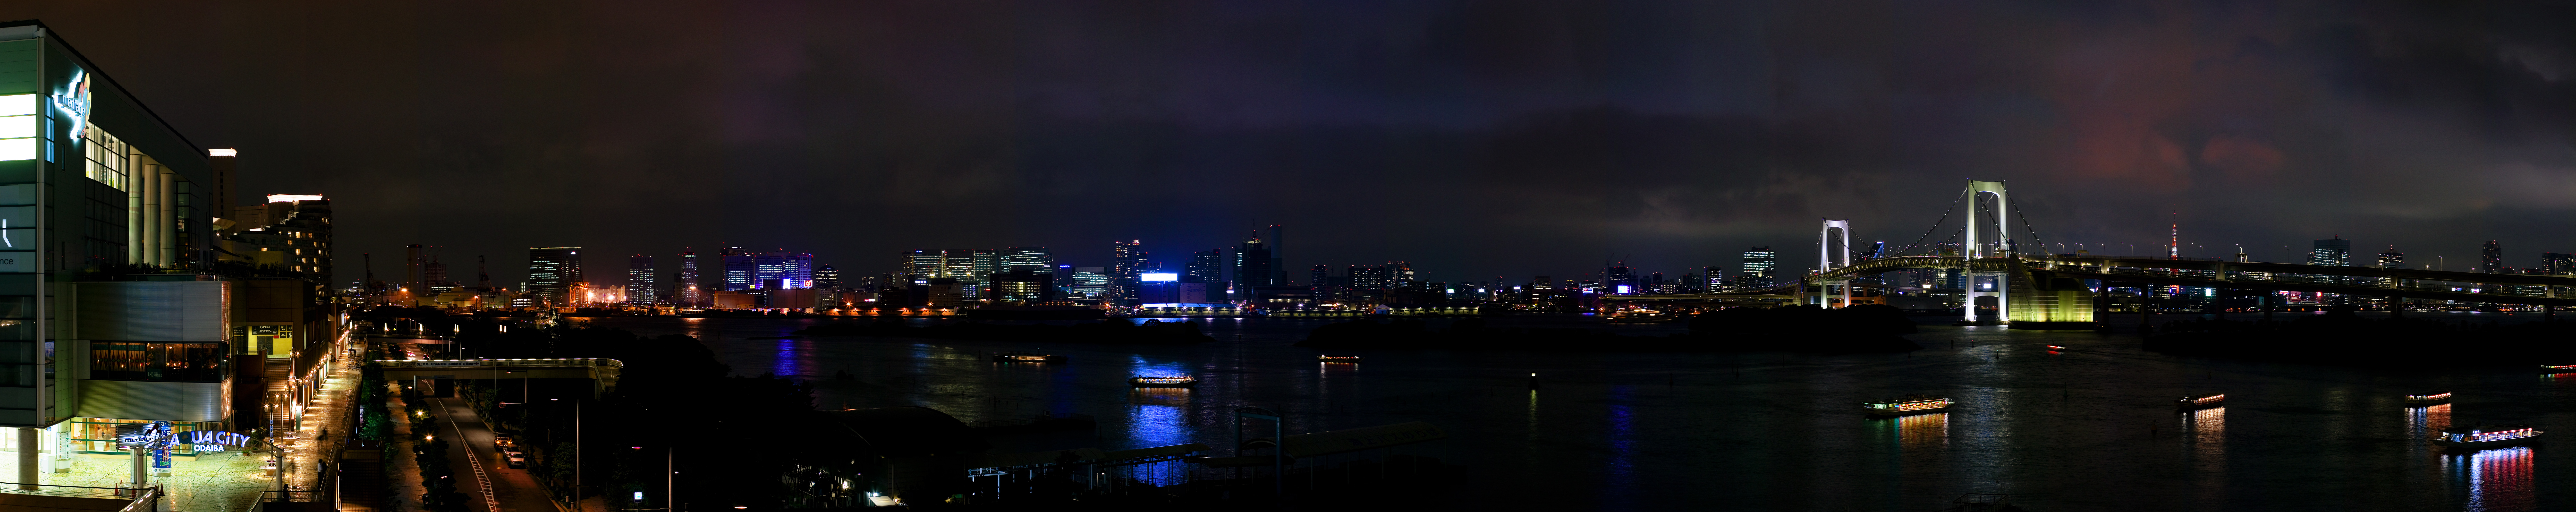 fotografia, material, livra, ajardine, imagine, proveja fotografia,Tquio viso noturna de Odaiba, Ponte de arco-ris, Baa de Tquio, barco de prazer, O litoral